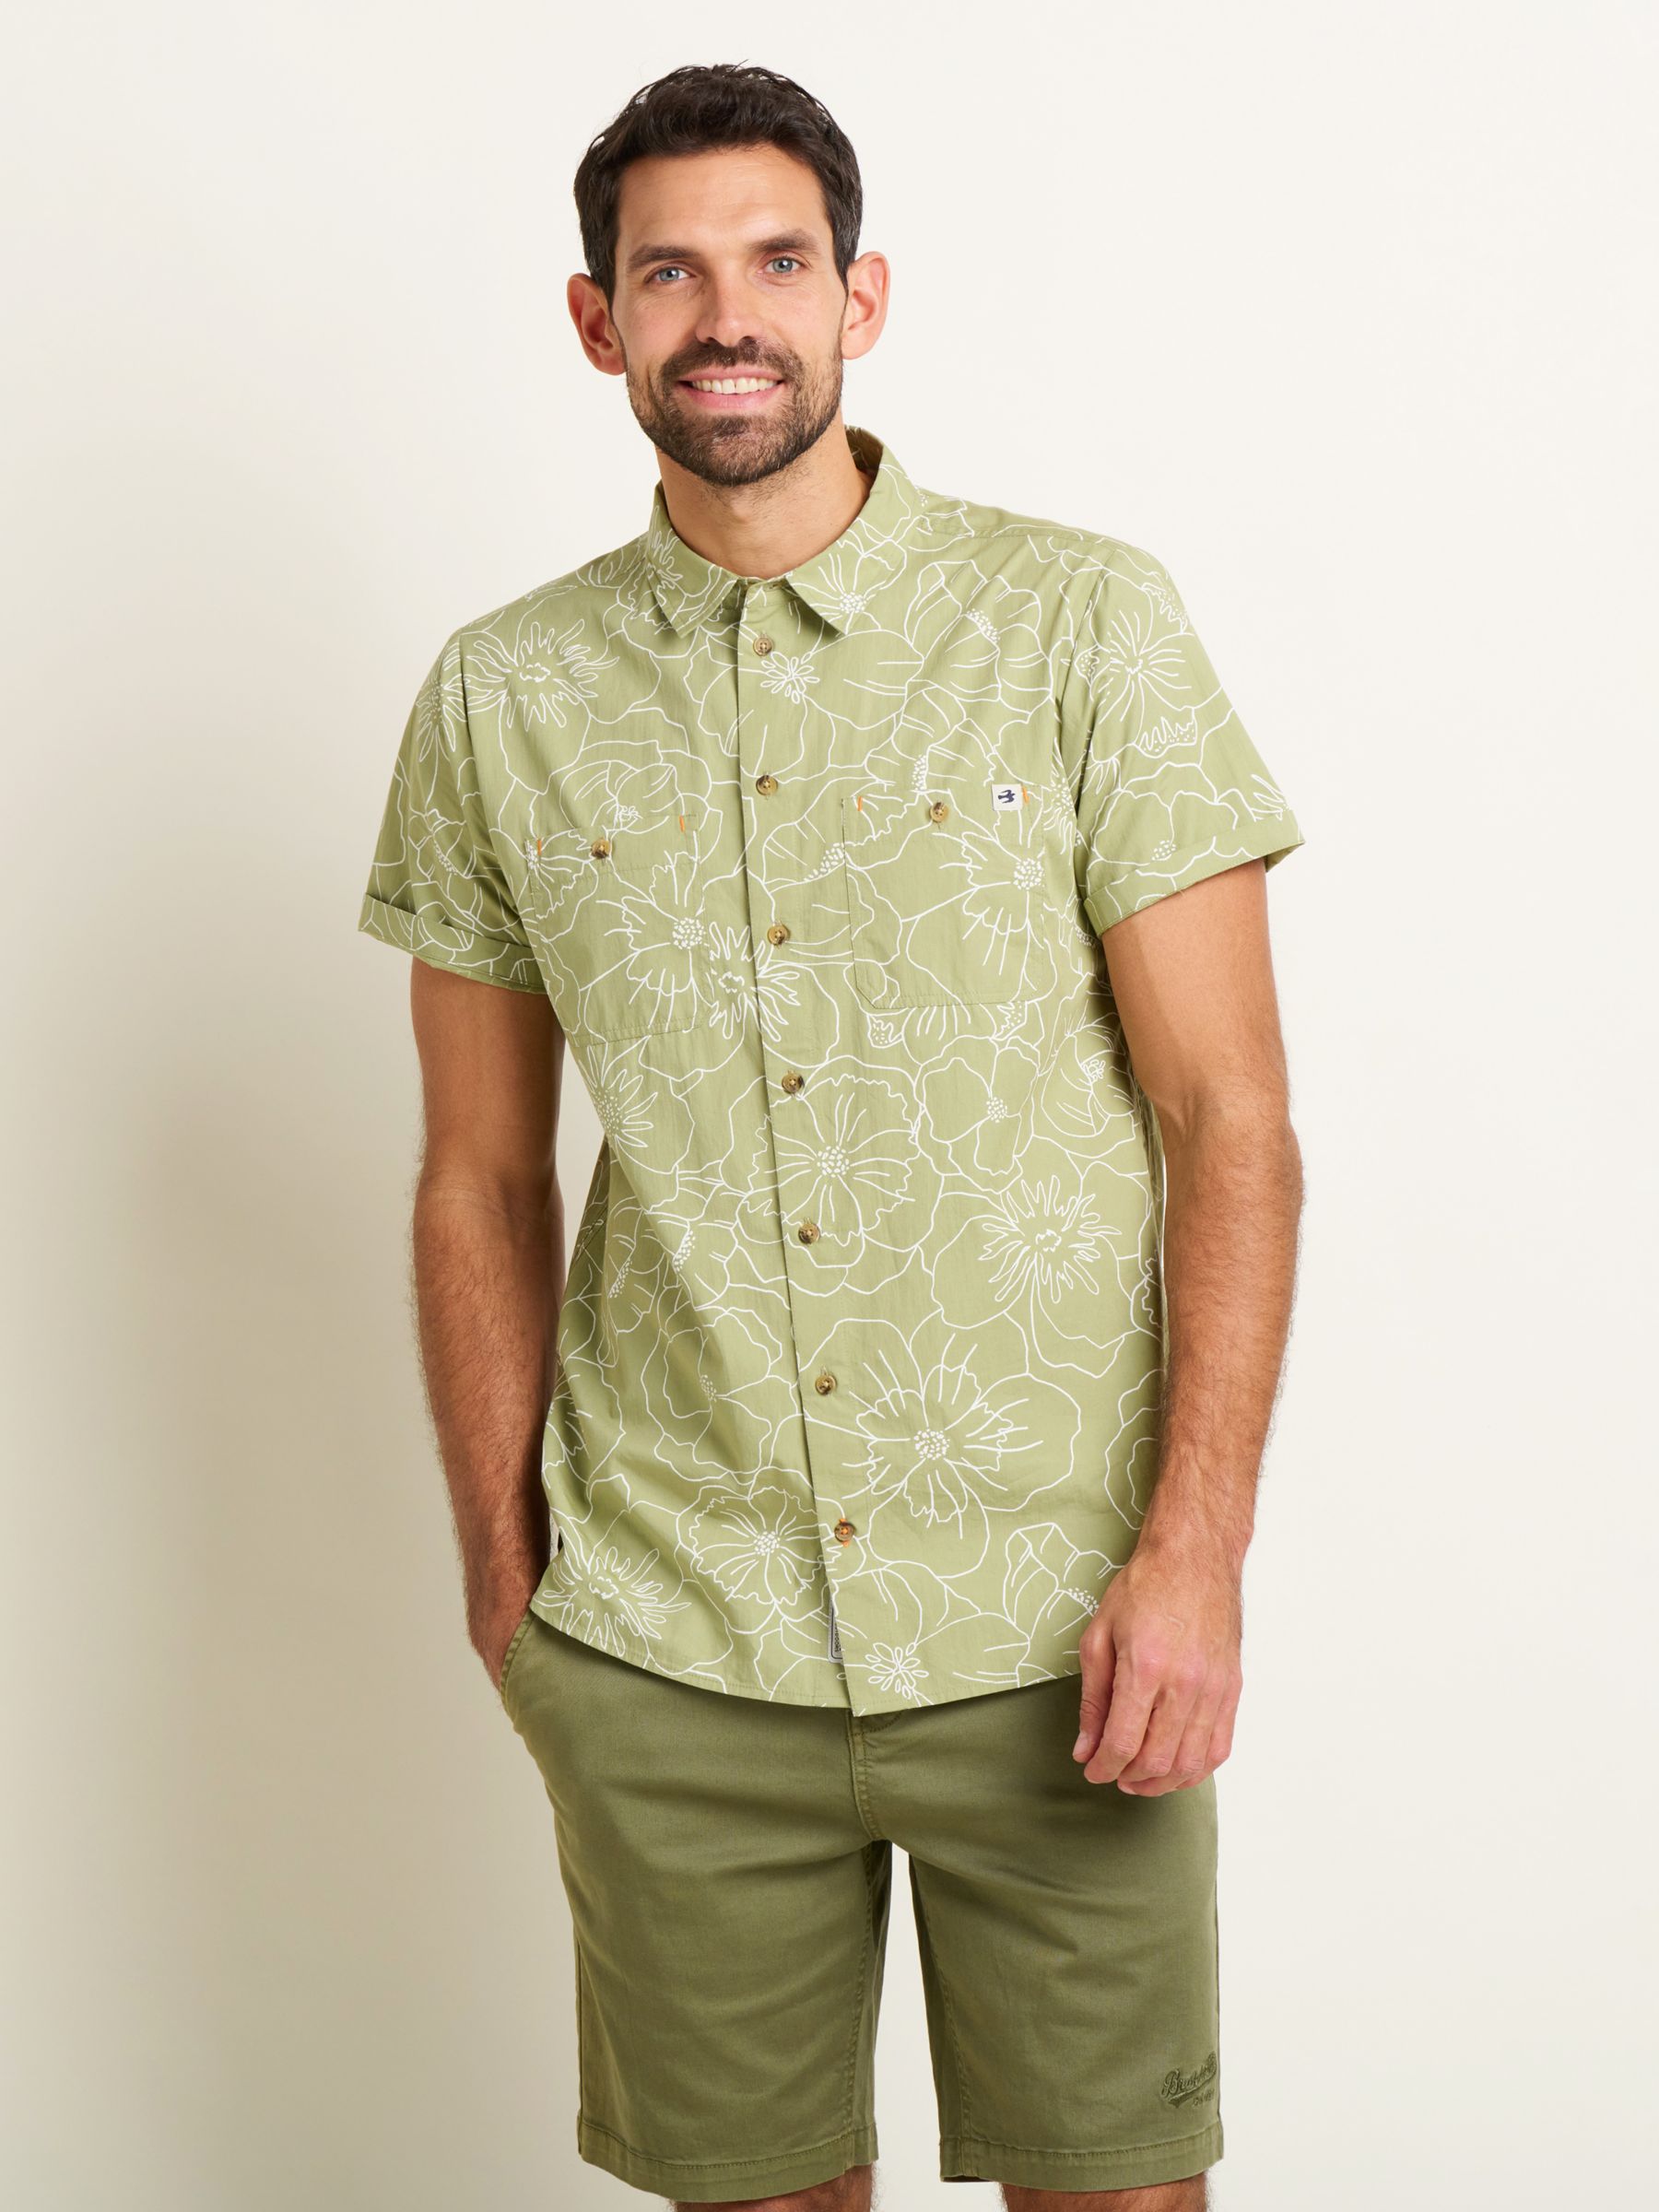 Brakeburn Linear Floral Shirt, Green/White, XL